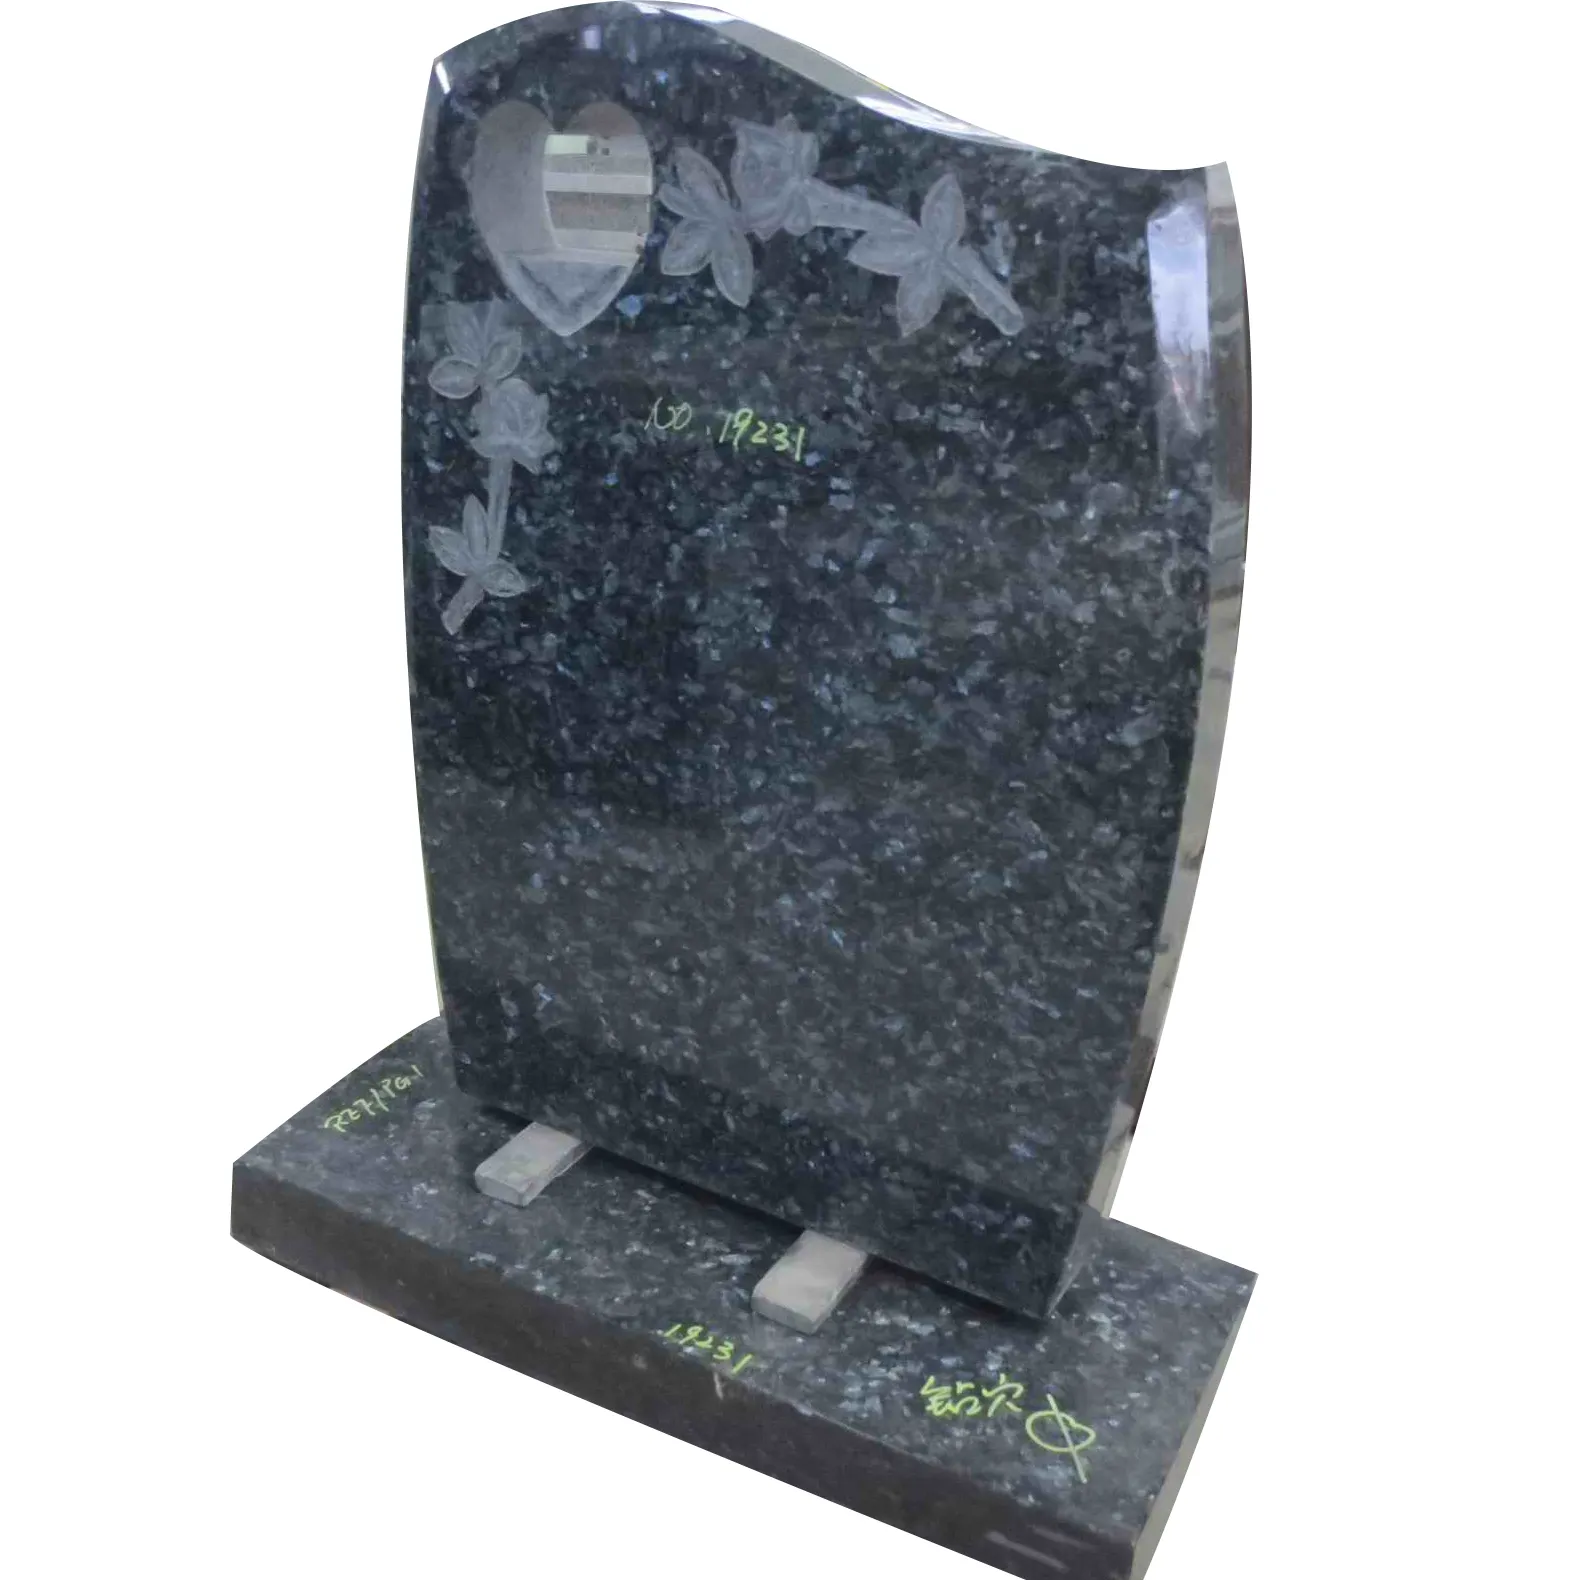 Hot-vendita moval forma granito lapide per la tomba di pietra monumento lastra.